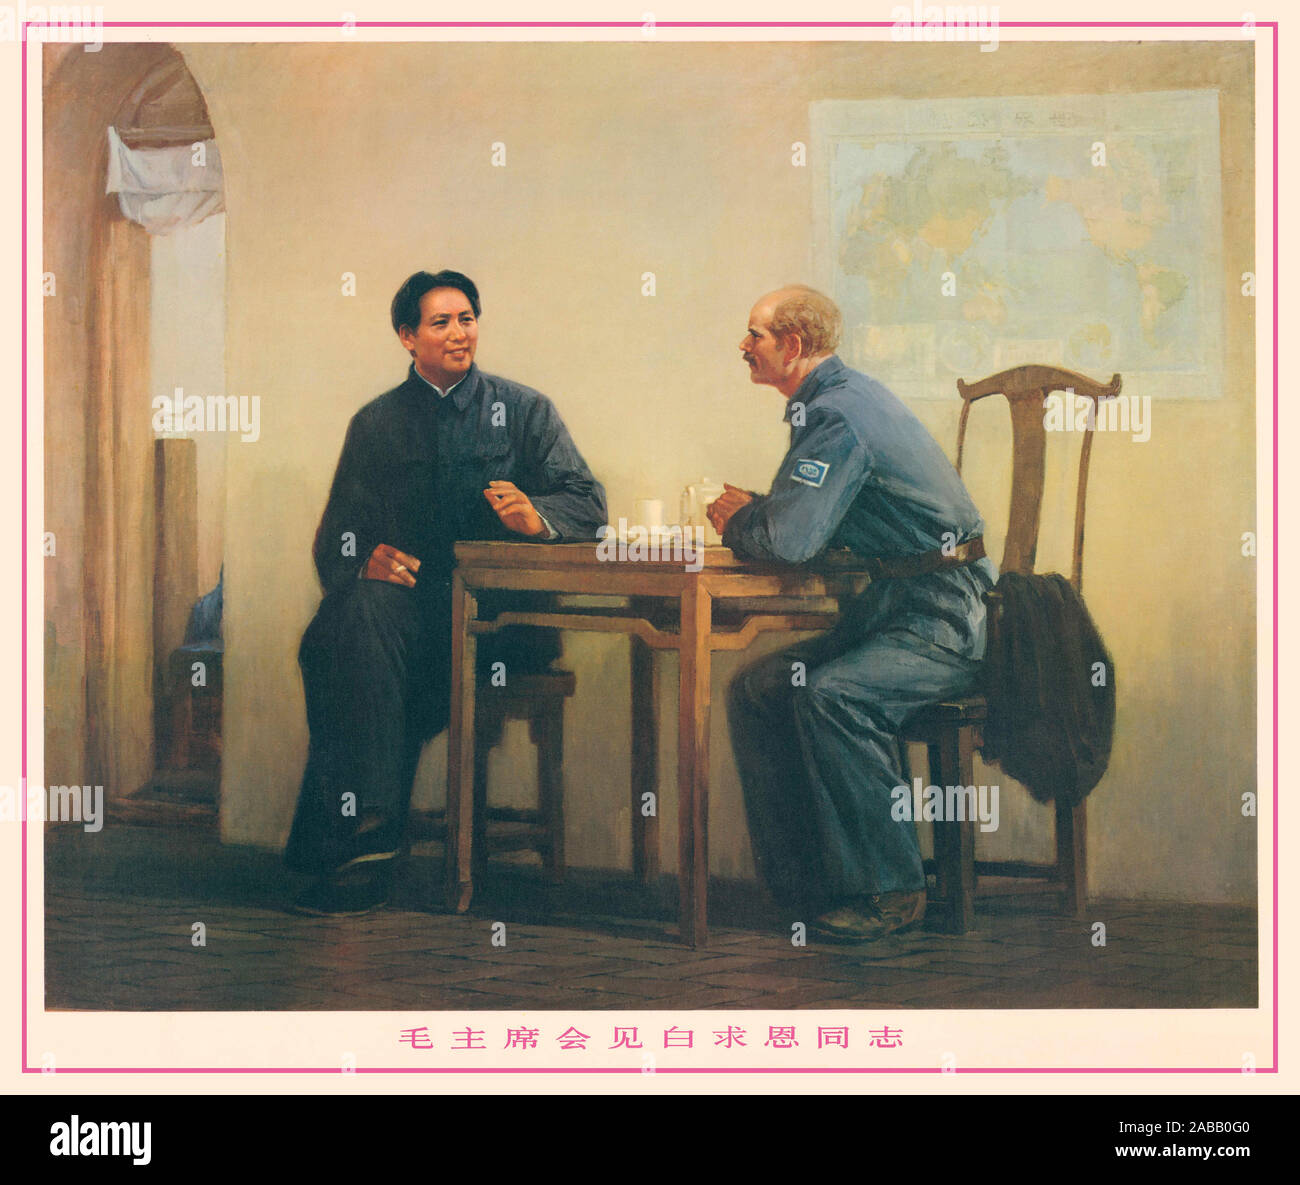 Vintage 1930 affiche de propagande chinois avec Mao Zedong avec médecin canadien Norman Bethune, à Yan'an (au cours de la Longue Marche) Chine 20e siècle. Un chirurgien, Bethune a considérablement aidé Huitième Armée de route des soldats qui avaient été blessés sur la ligne de front durant la seconde guerre sino-japonaise qui lui vaudra une renommée durable. Le Dr Bethune a été grandement salué par Mao Tse-Tung et a été inclus dans les manuels scolaires depuis.Yan'an a été près de l'extrémité de la Longue marche, et devint le centre de la révolution communiste chinoise de la fin 1935 à début 1947. Les communistes chinois célébrer Yan'an Banque D'Images